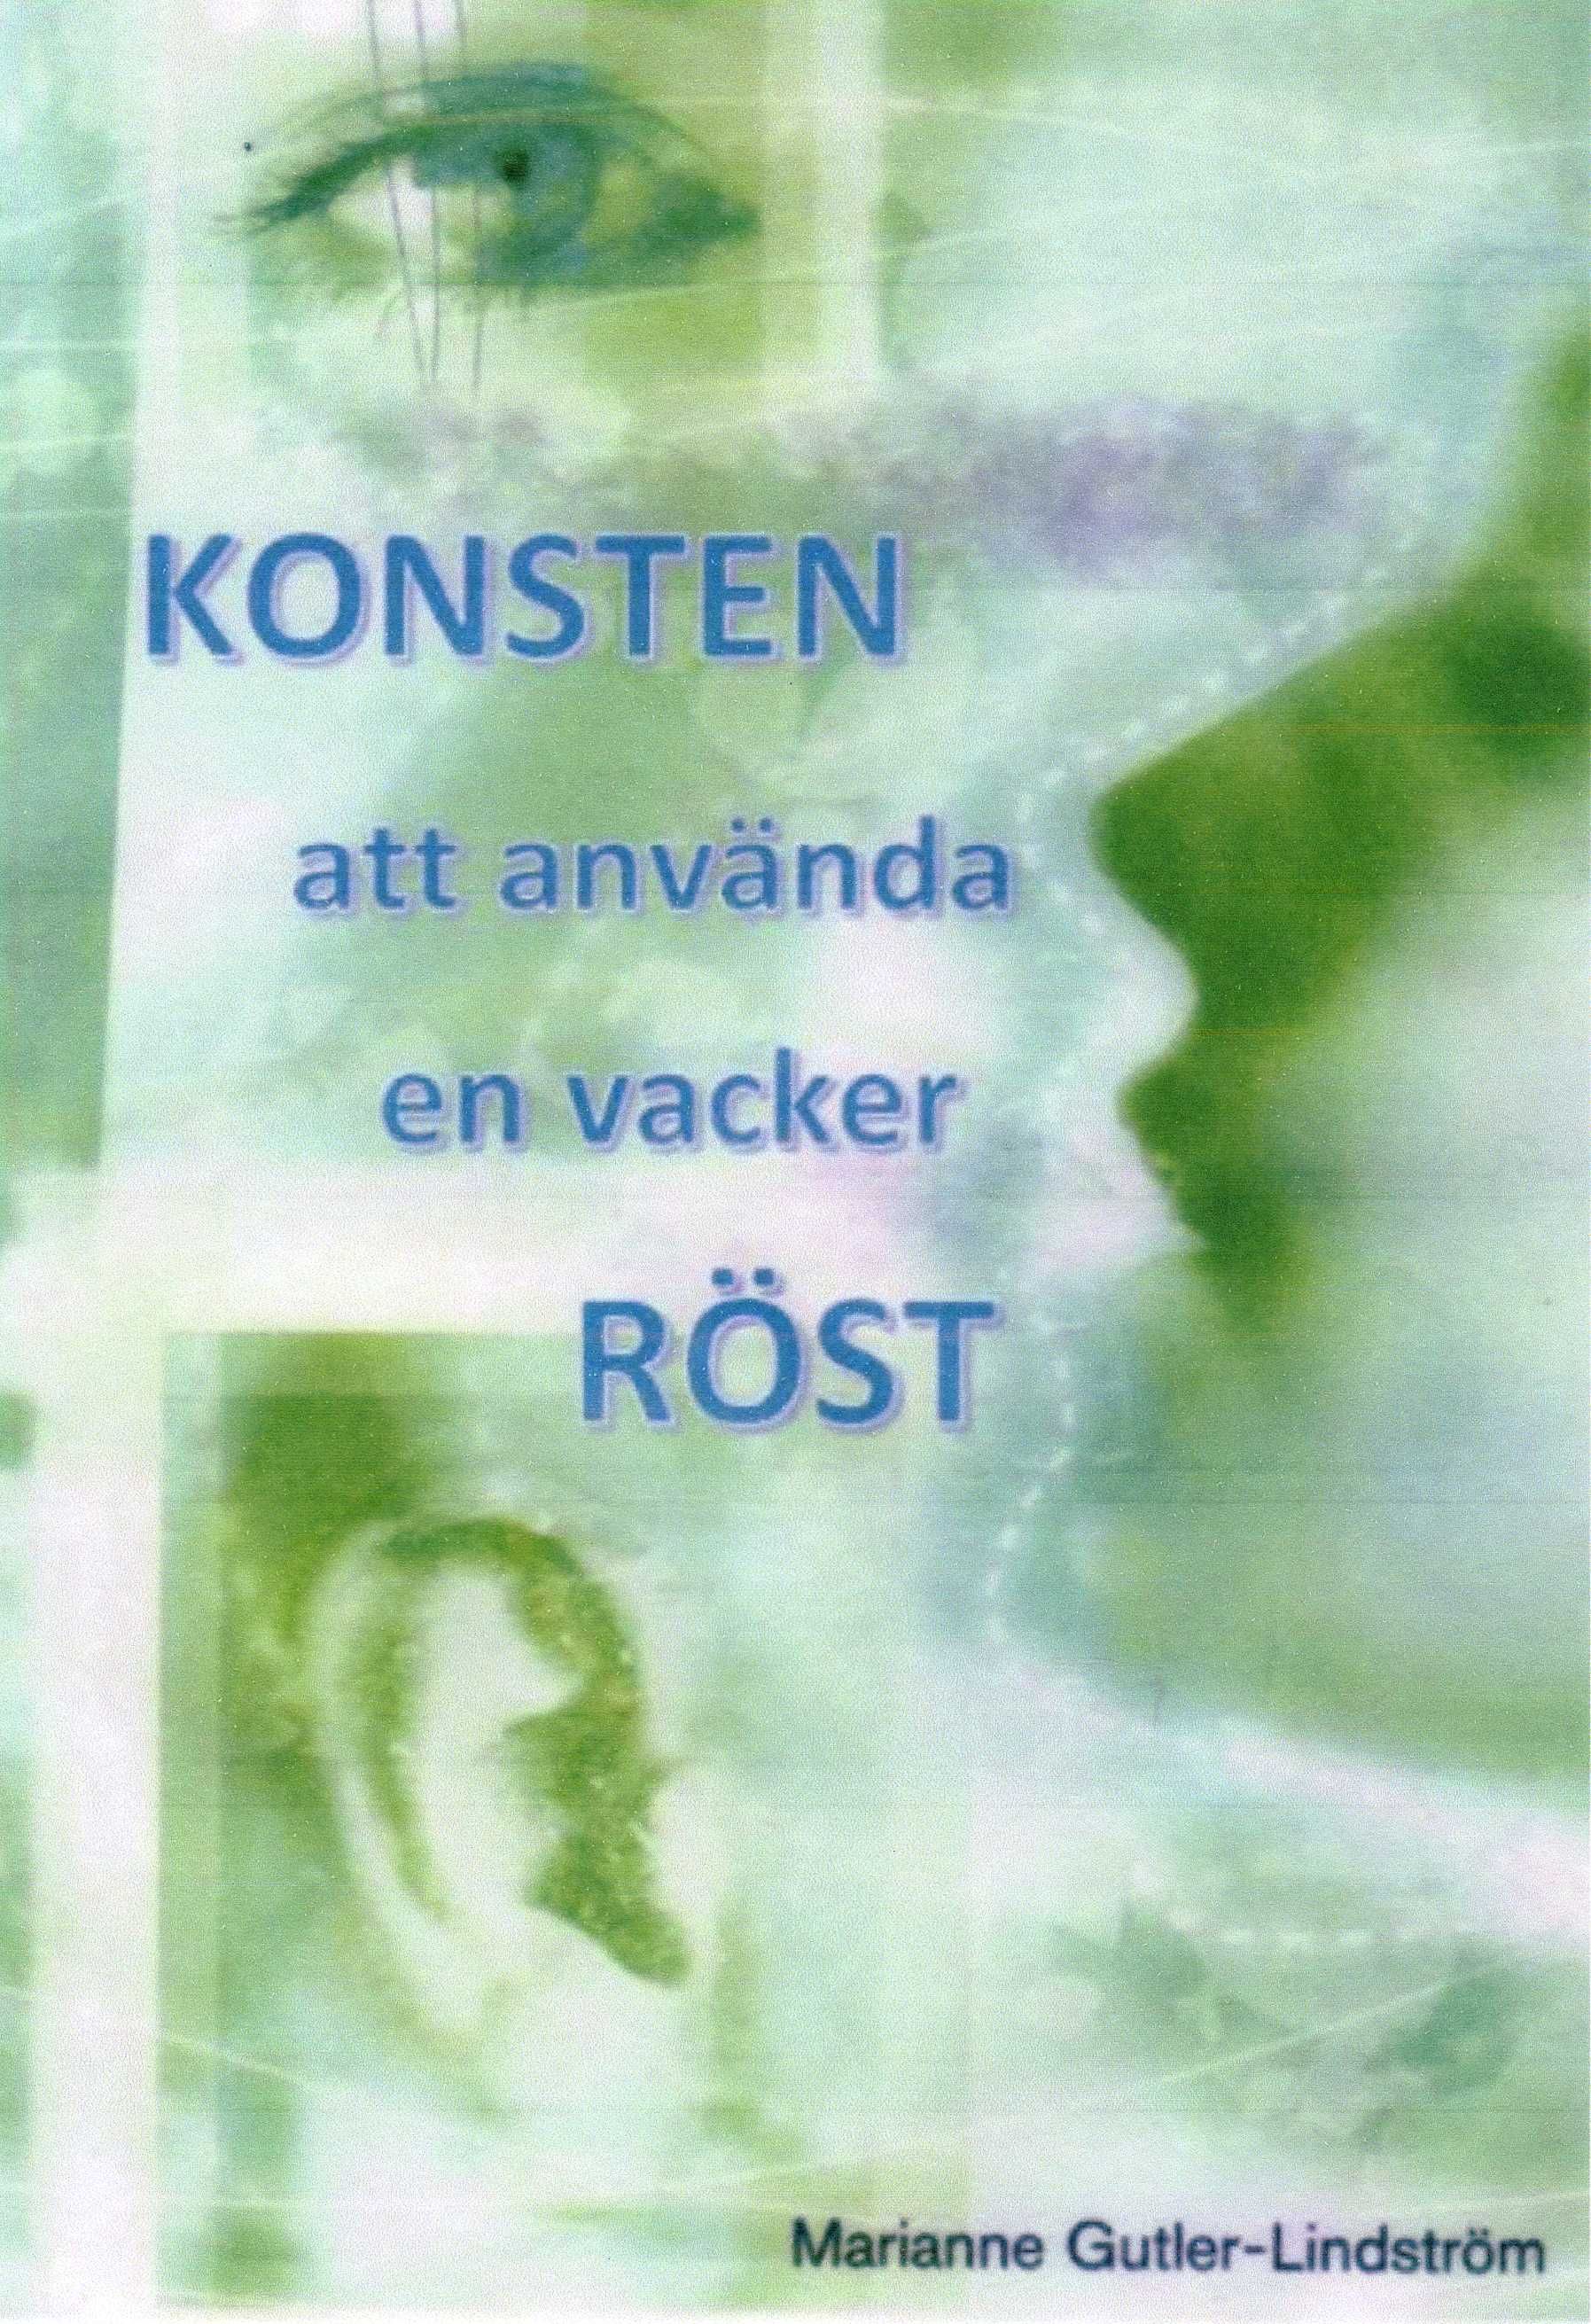 Konsten att använda en vacker röst, eBook by Marianne Gutler Lindström